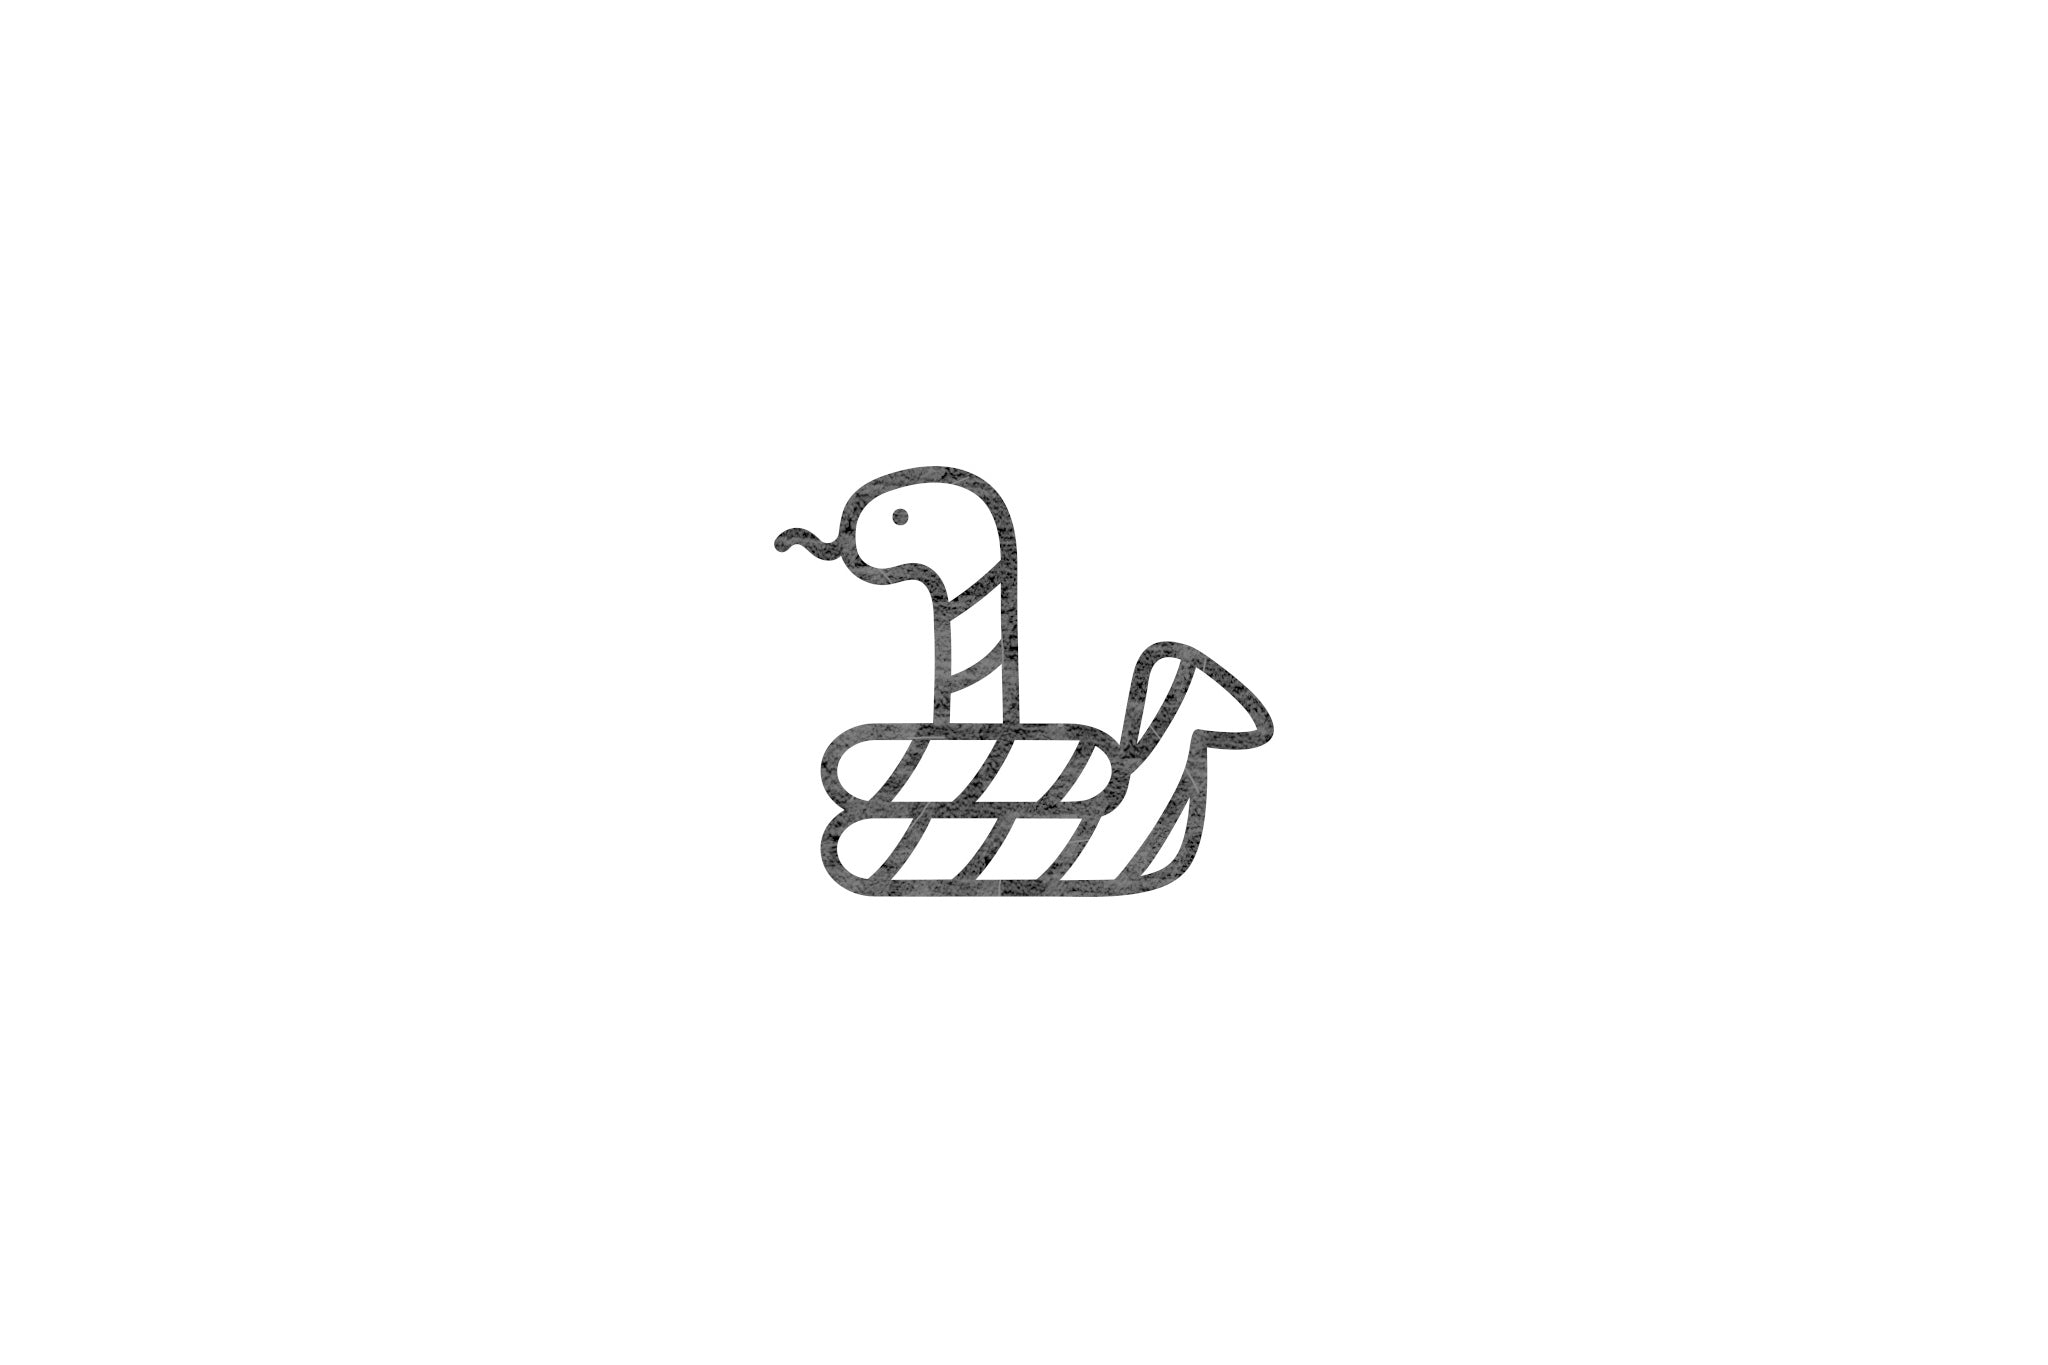 Houten ecologische symbool stempel met symbool van een slang